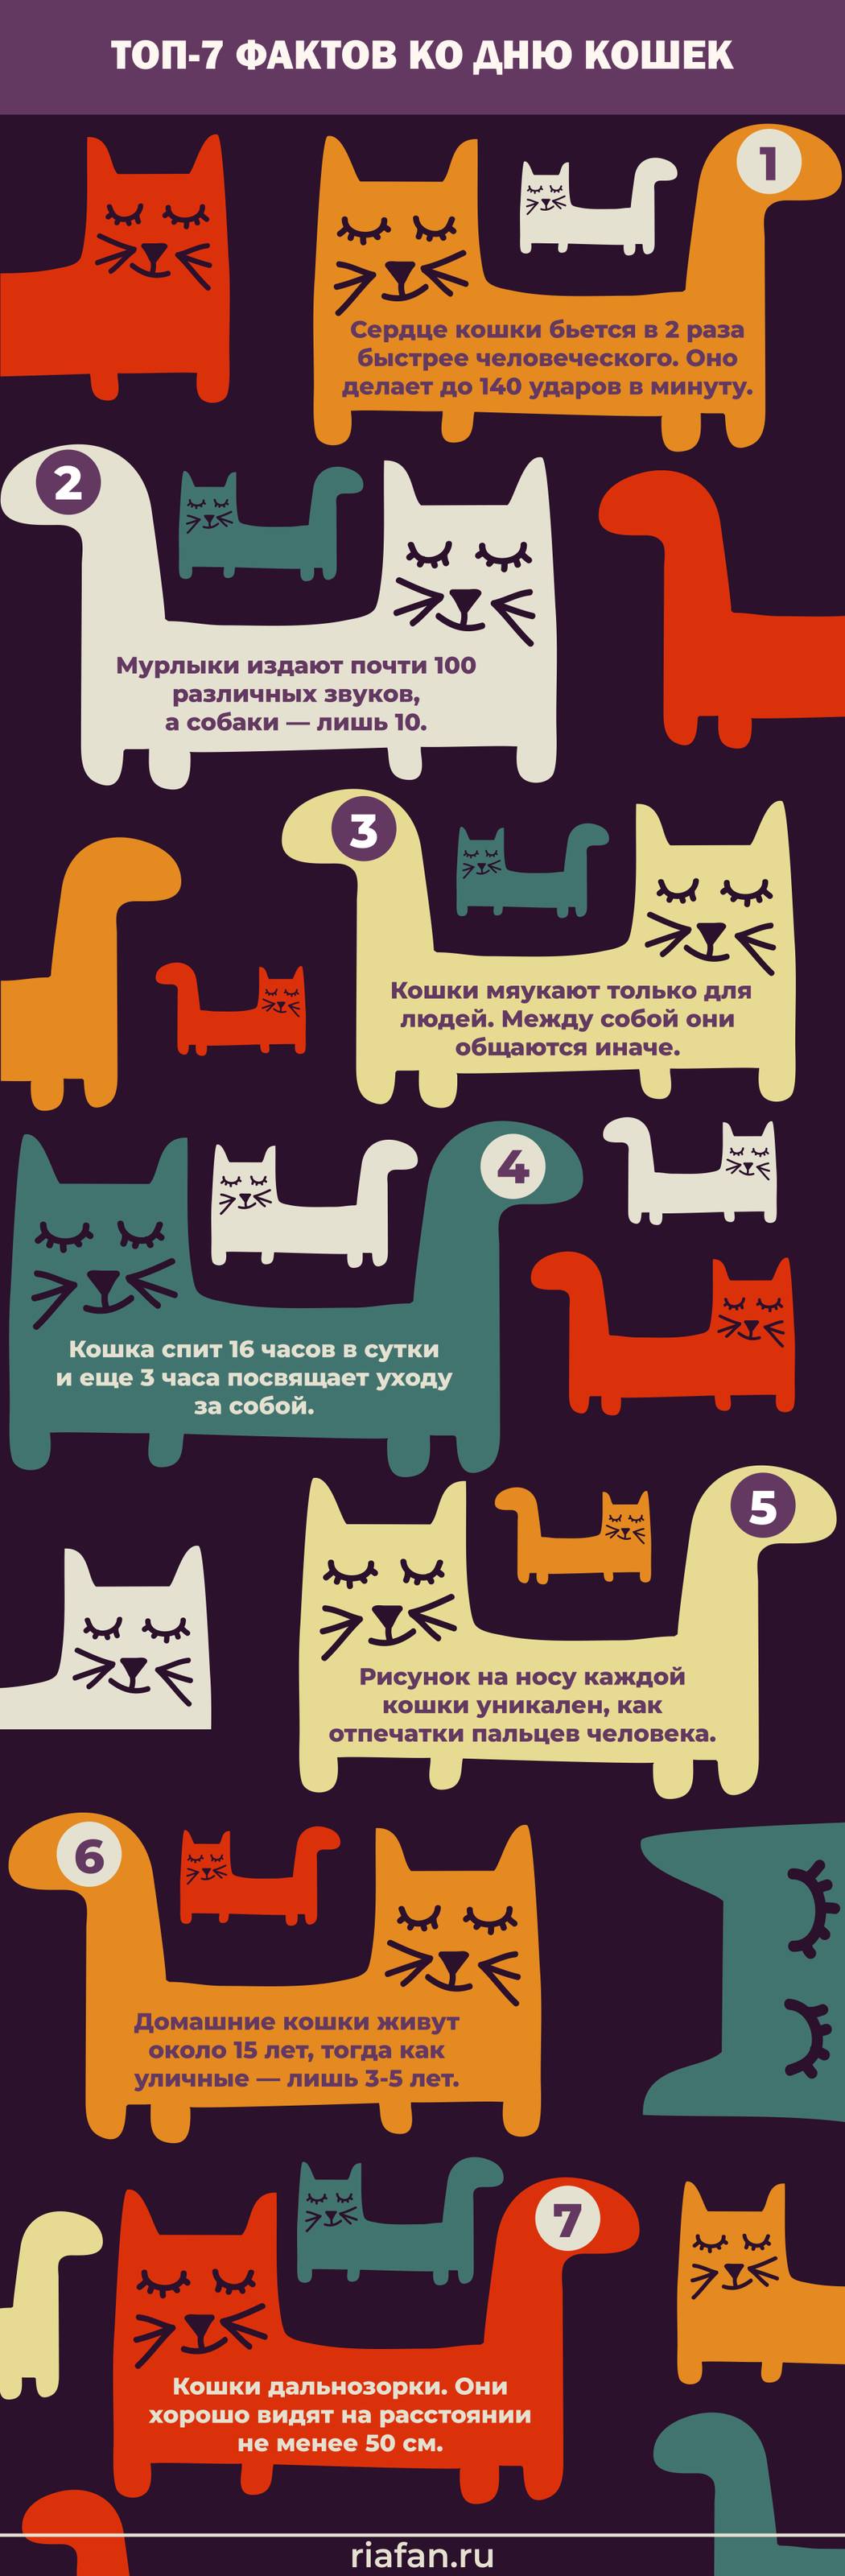 Топ фактов ко Всемирному дню кошек 8 августа